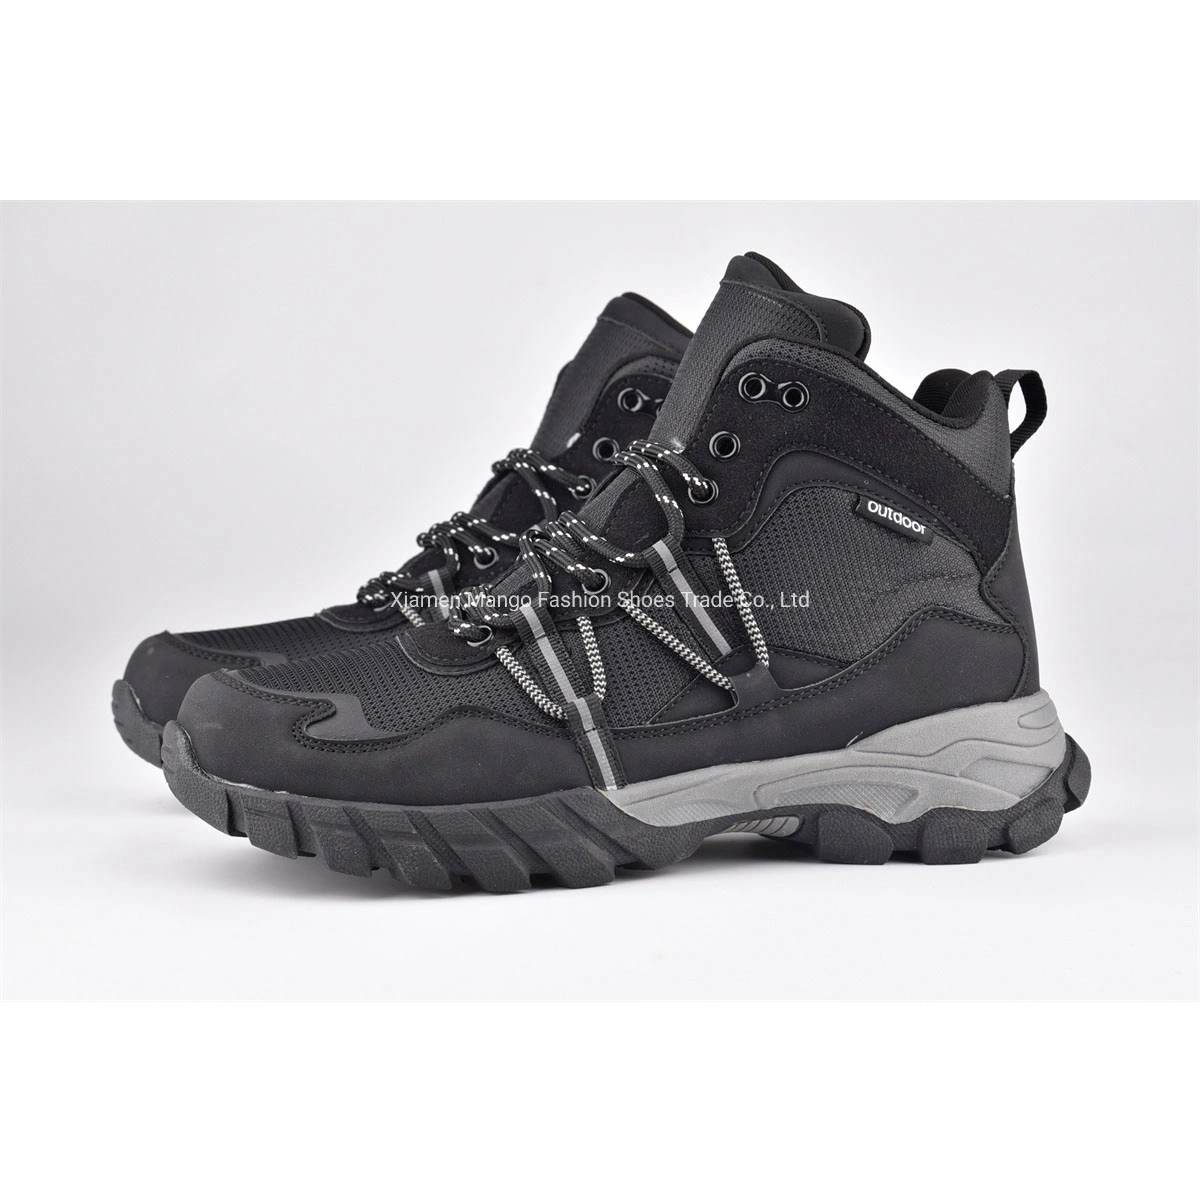 Женские кроссовки New Style с черным топком для запекающих в водостойкие нескользящие соски Ботинки Hiking Boot для женщин